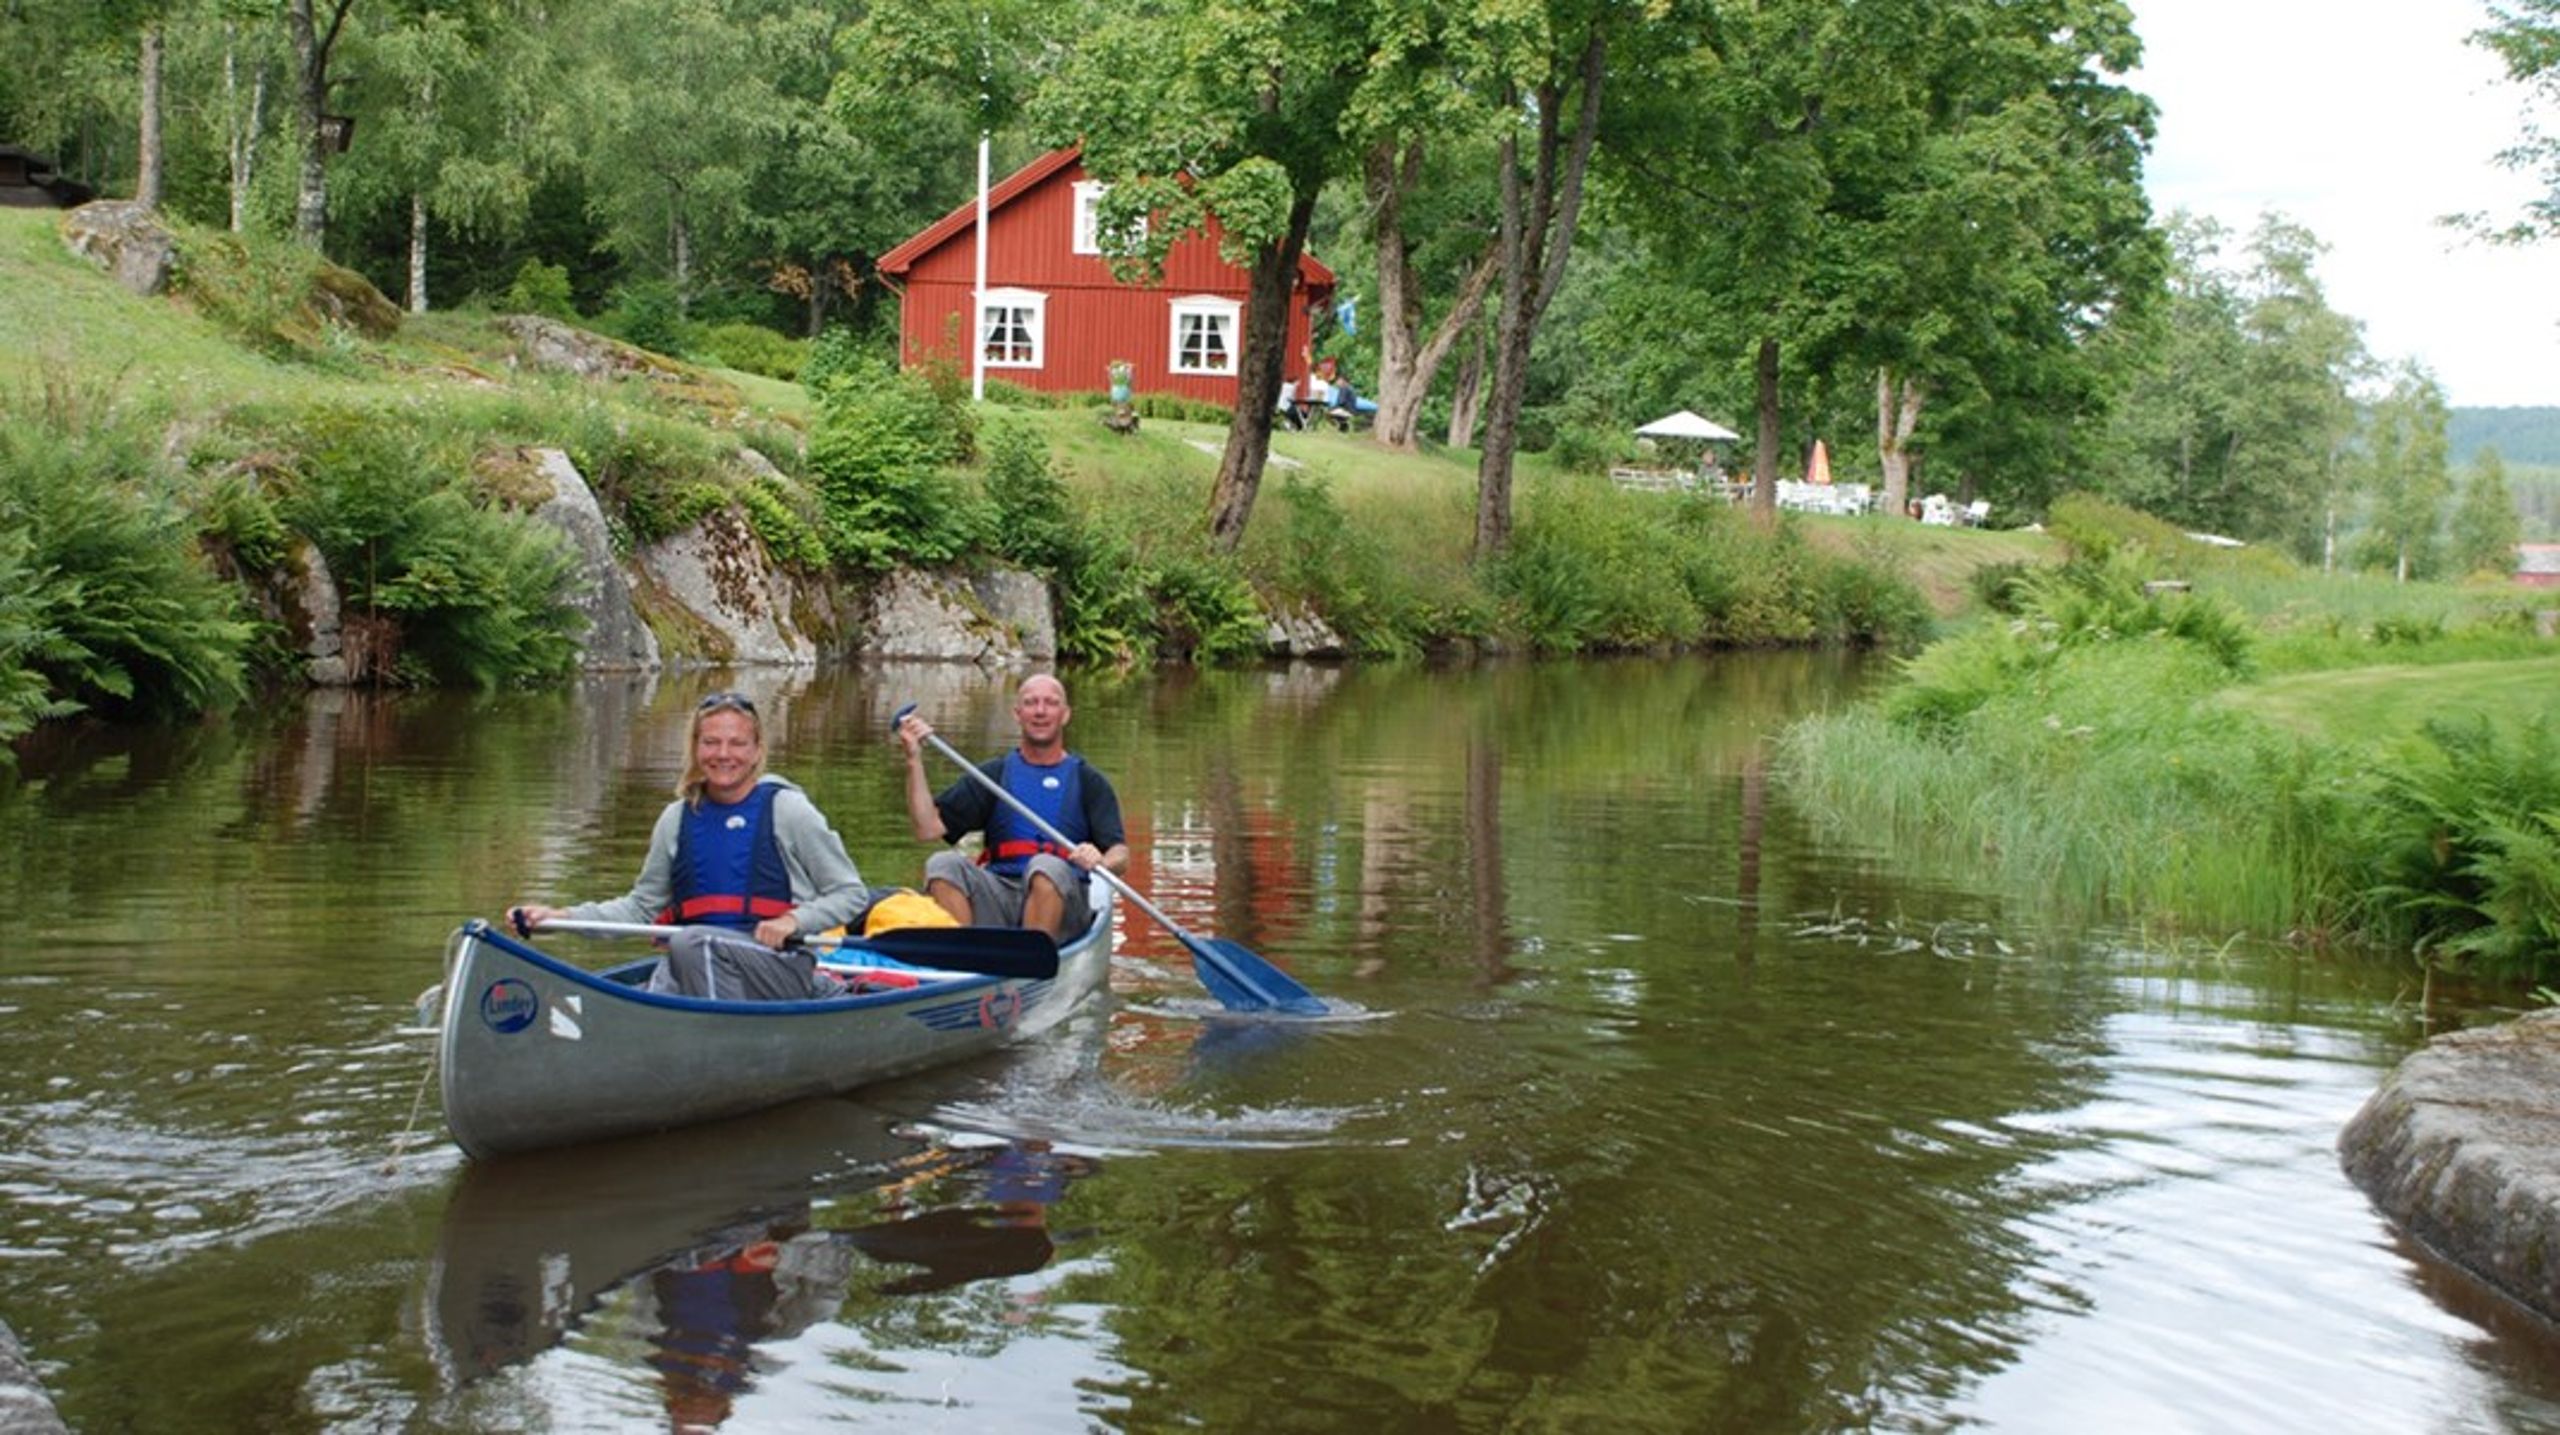 Jobba inom äldreomsorgen och paddla kanot vid Bjurbäckens slussar? Storfors kommun erbjuder jobb, boende och&nbsp; gemensamma aktiviteter i sommar för omsorgsvikarier.&nbsp;